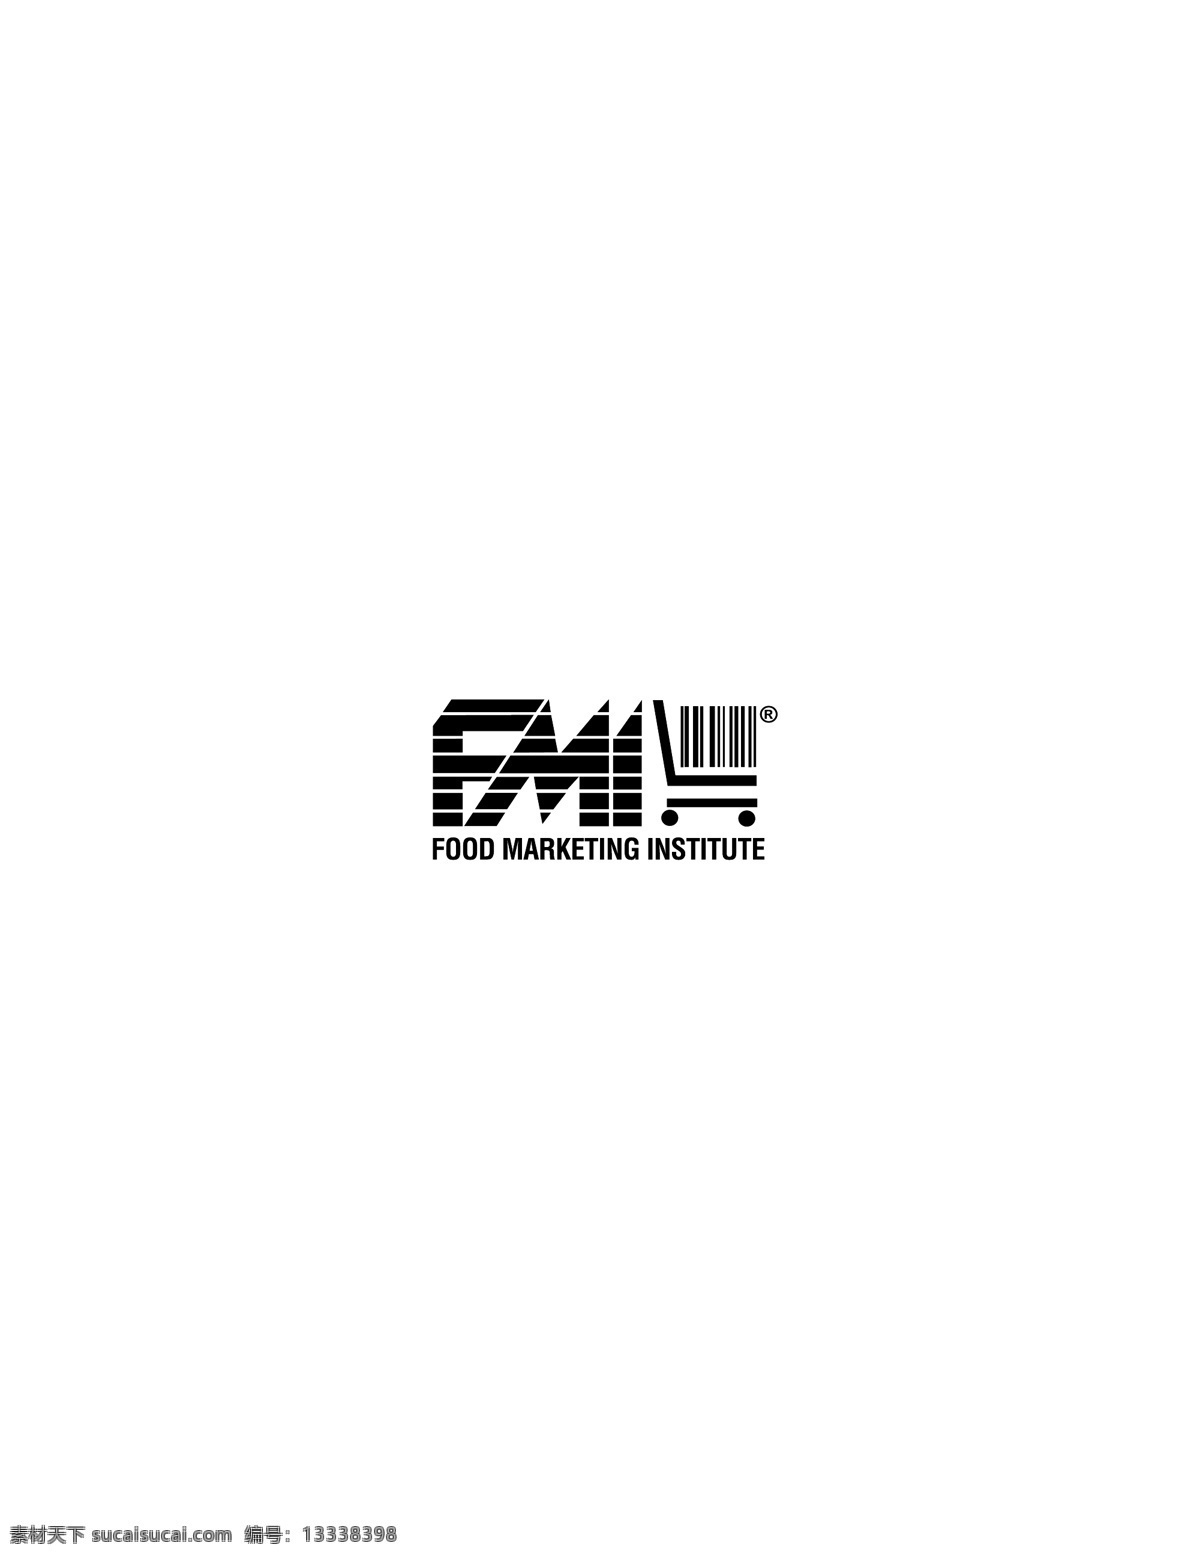 fmi logo大全 logo 设计欣赏 商业矢量 矢量下载 名牌 饮料 标志 标志设计 欣赏 网页矢量 矢量图 其他矢量图